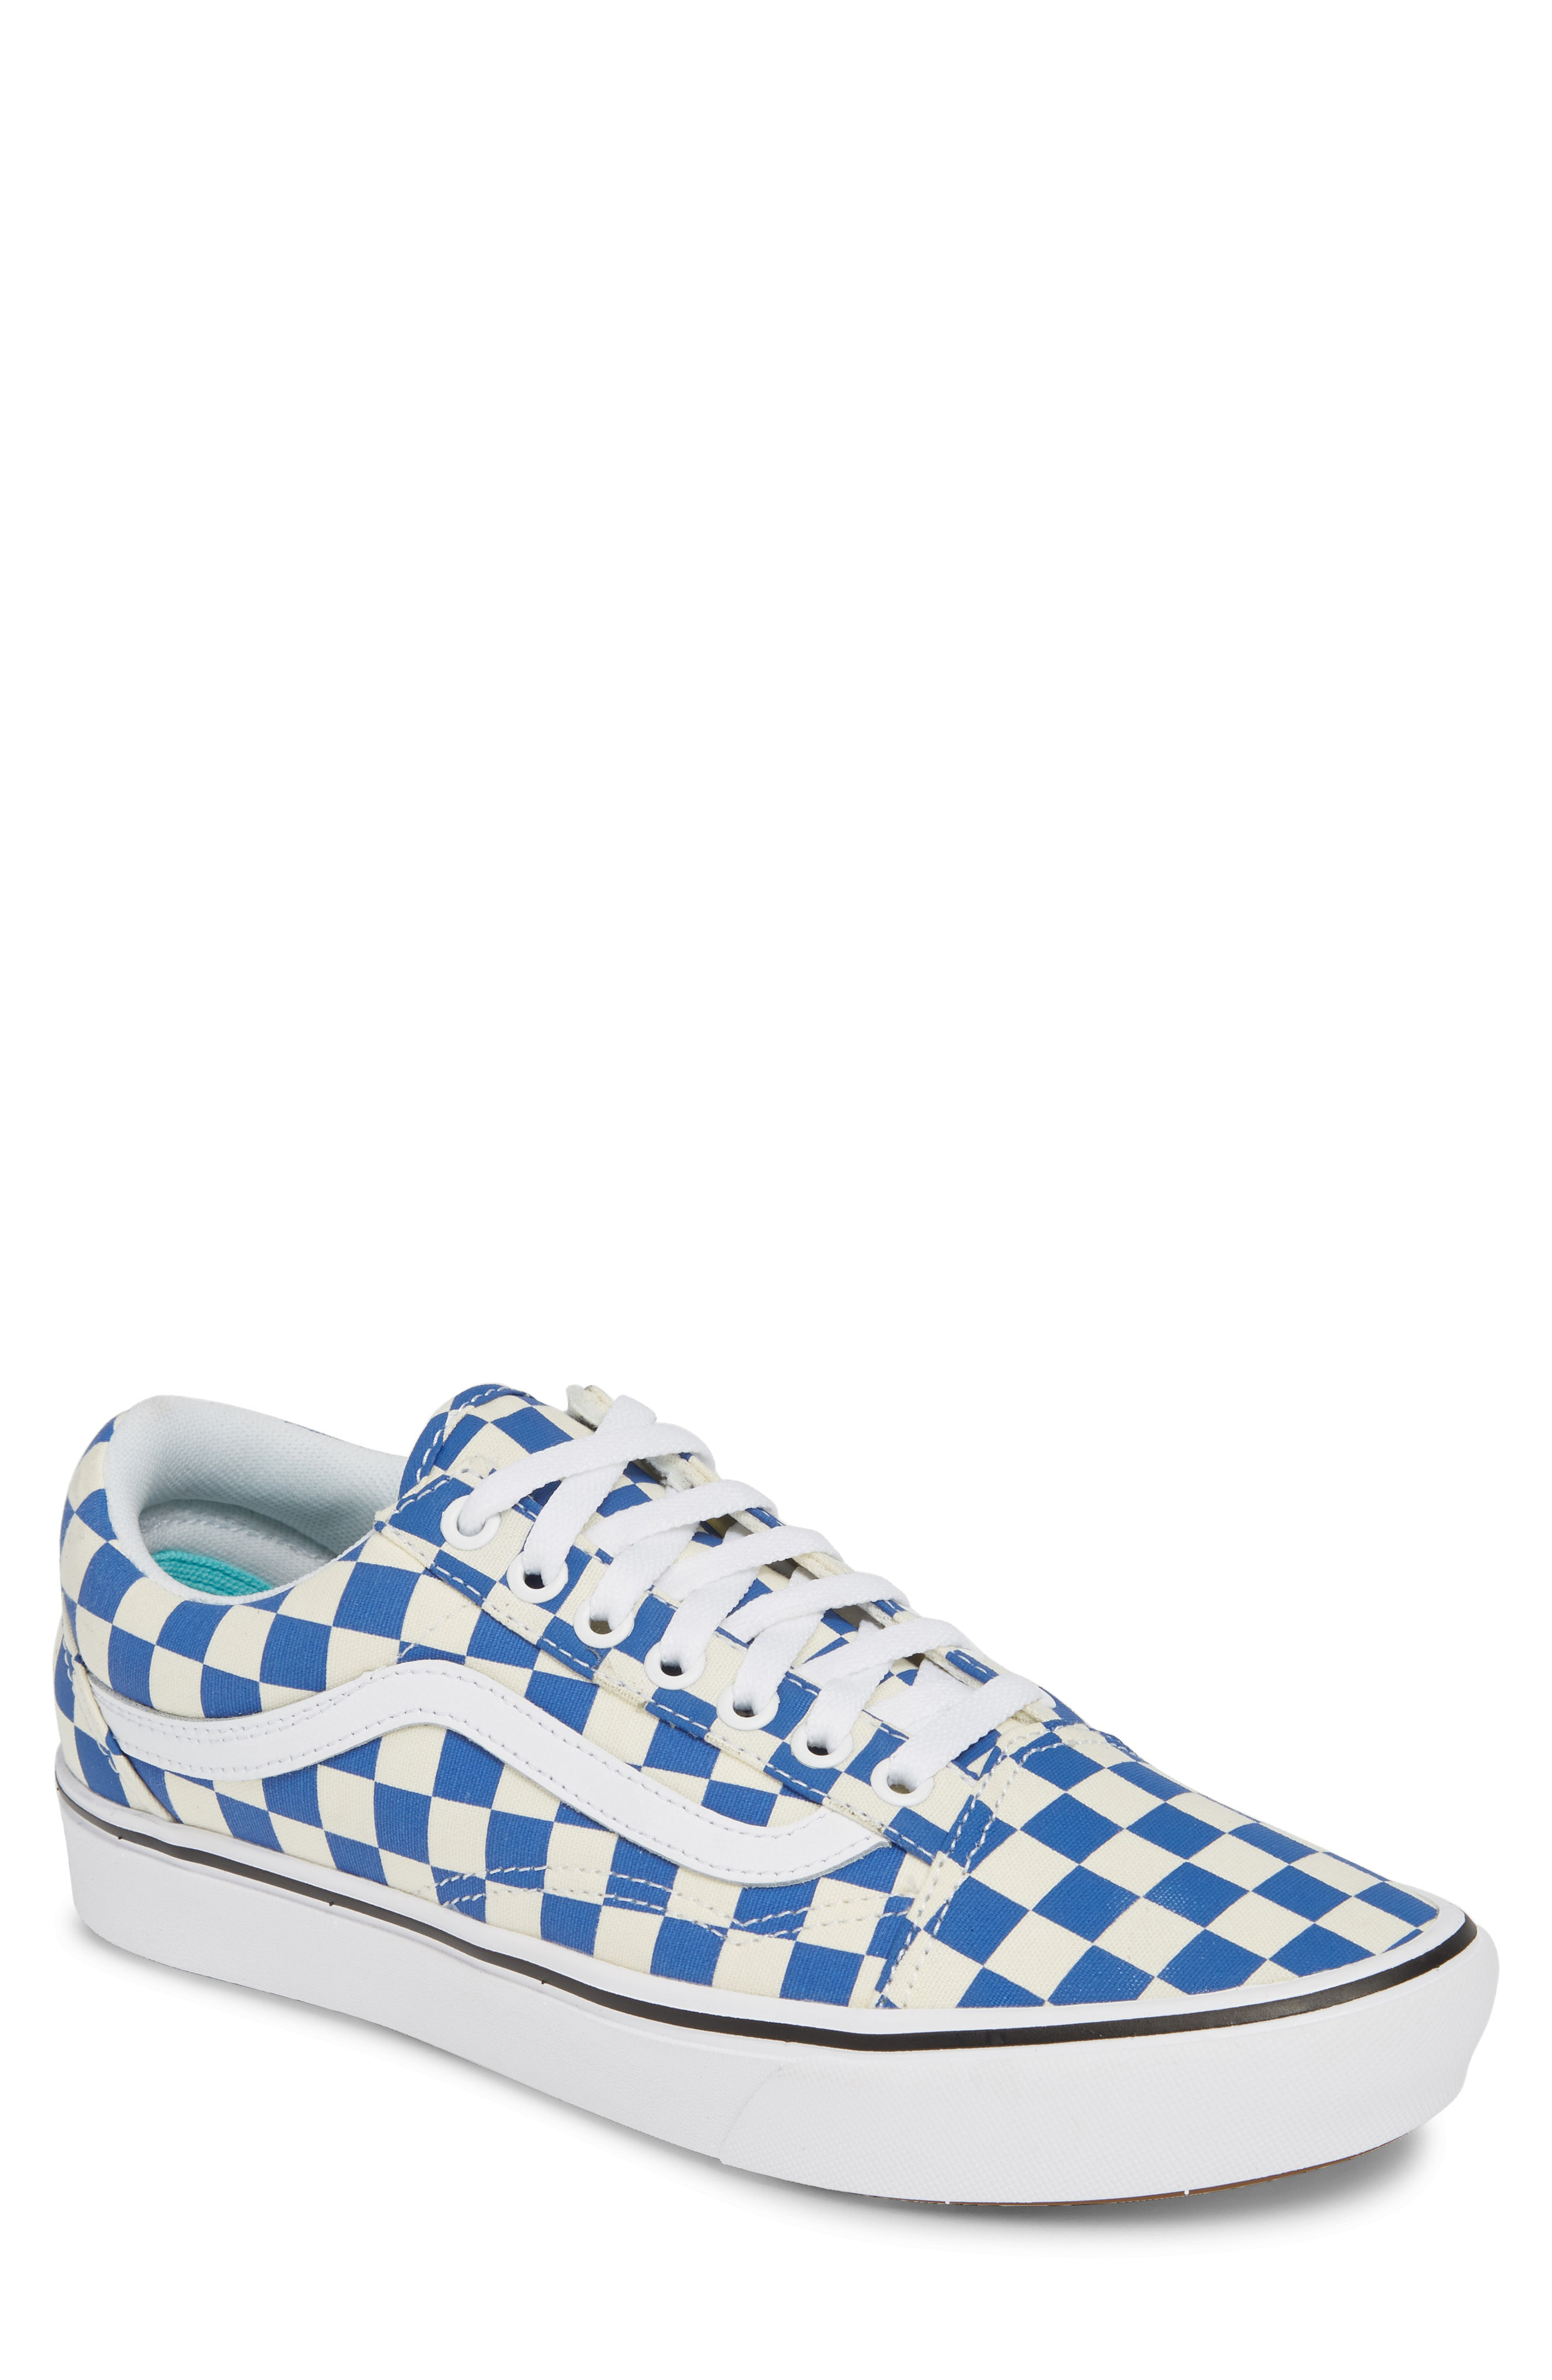 vans checkerboard blue white